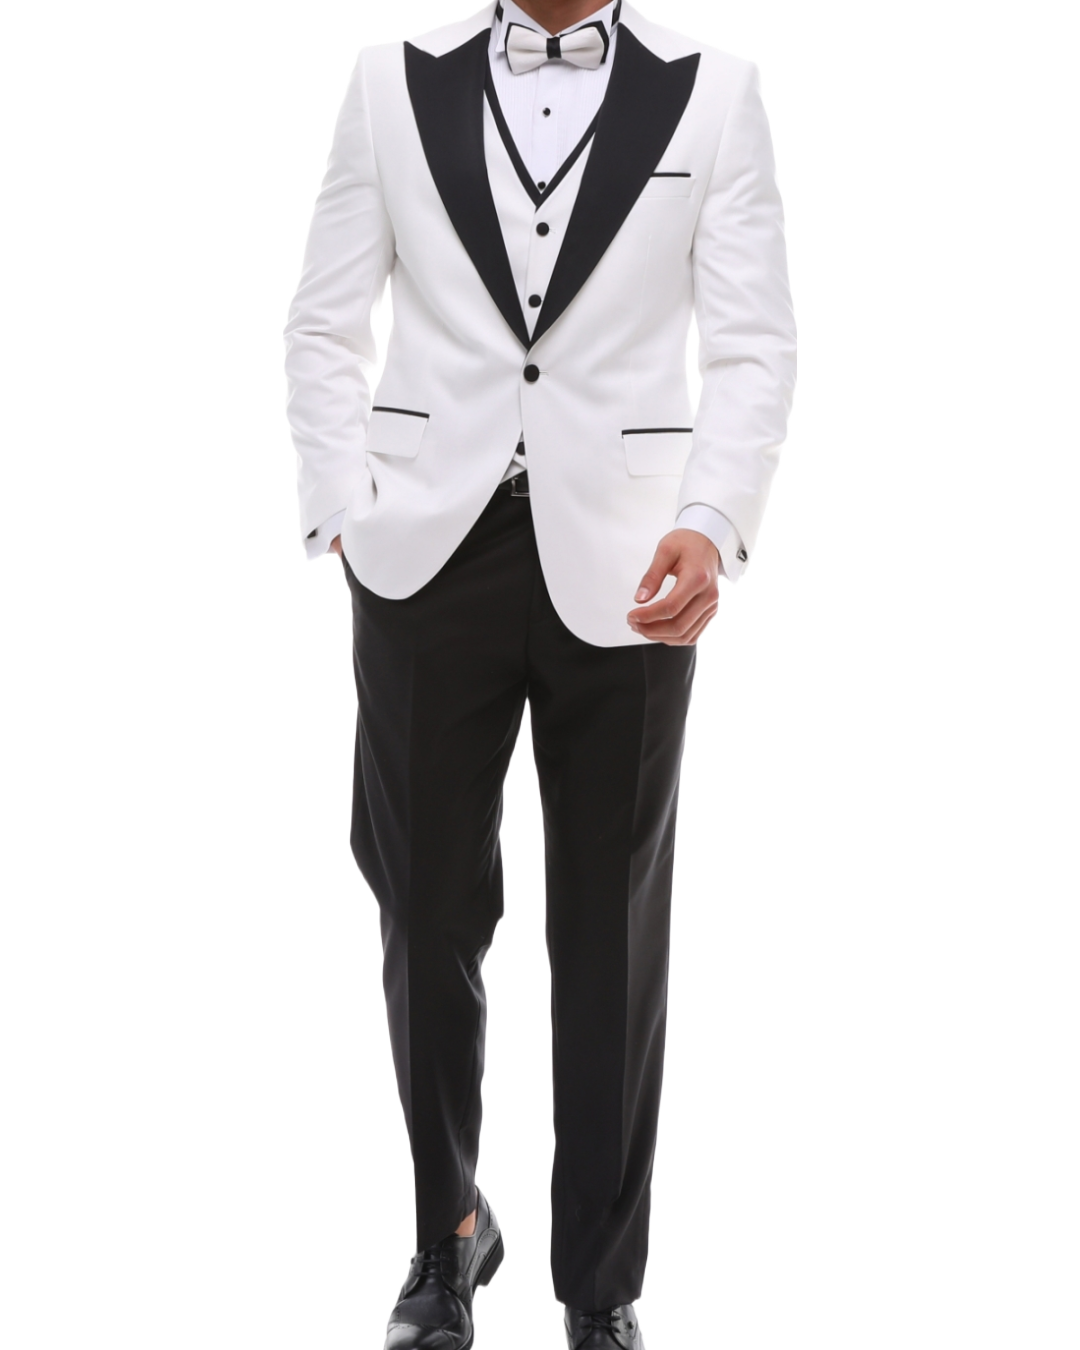 ANTIQUE WHITE PEAK LAPEL - White & Black Satin Four Piece Tuxedo